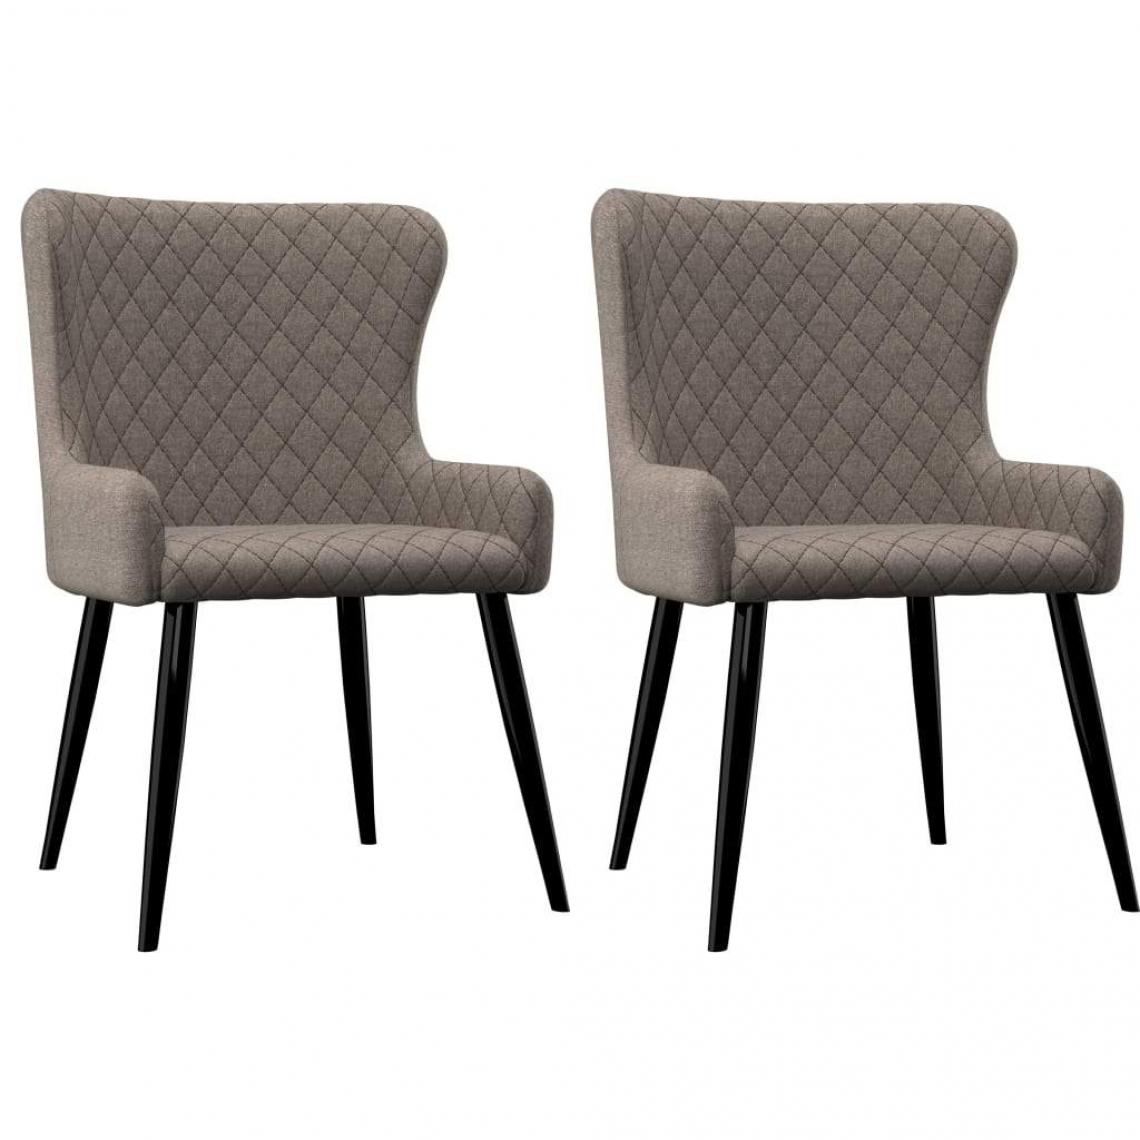 Decoshop26 - Lot de 2 chaises de salle à manger cuisine design rétro tissu taupe CDS021050 - Chaises